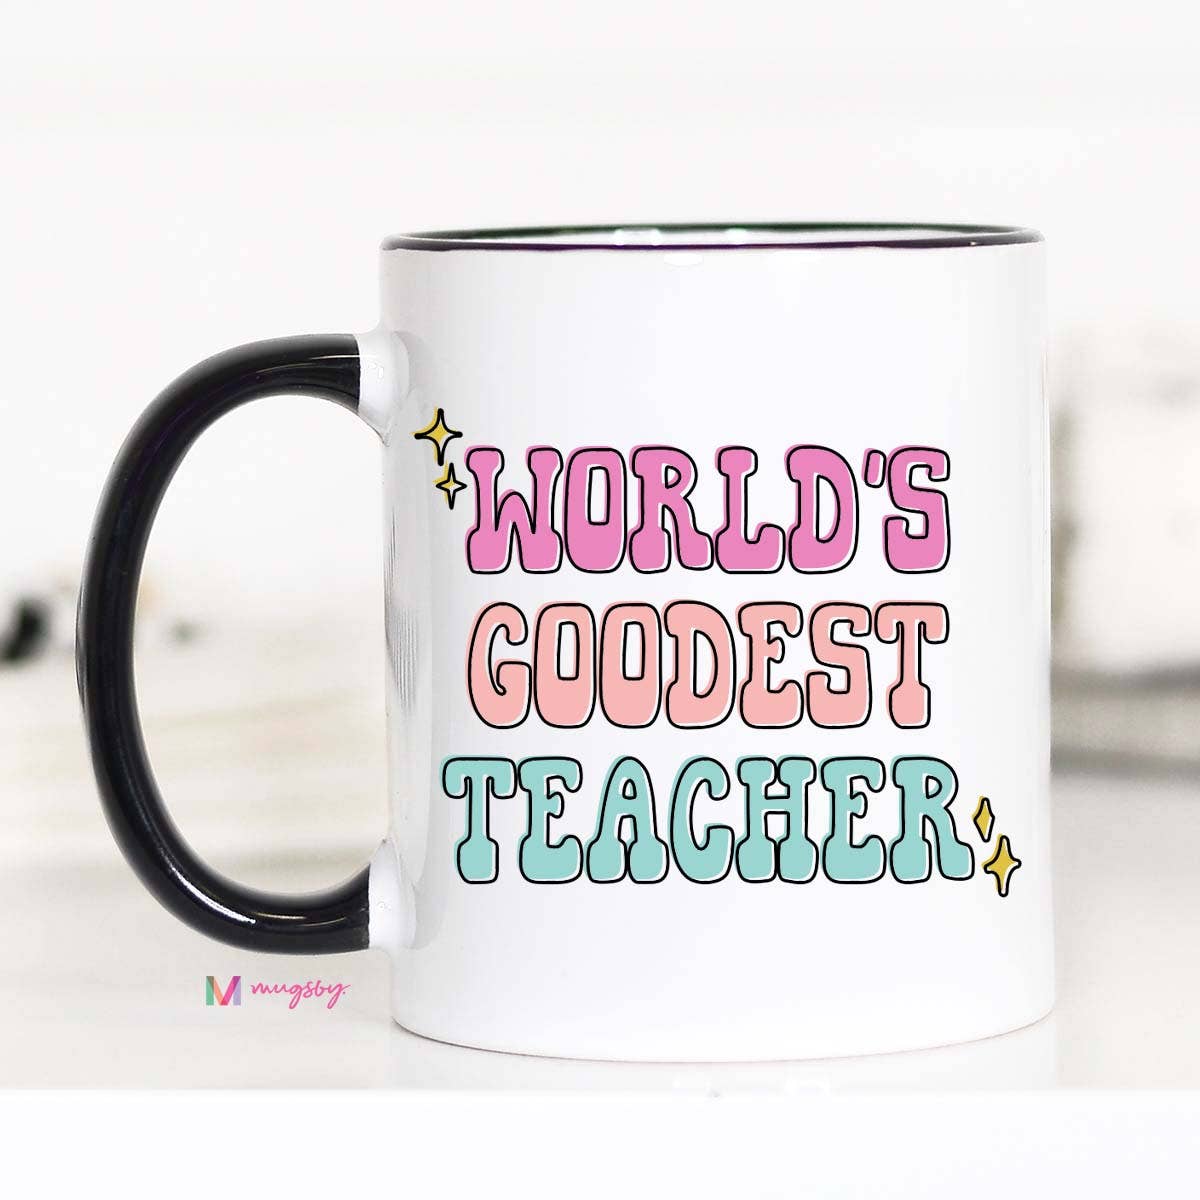 World's Goodest Teacher Coffee Mug, Teacher gifts